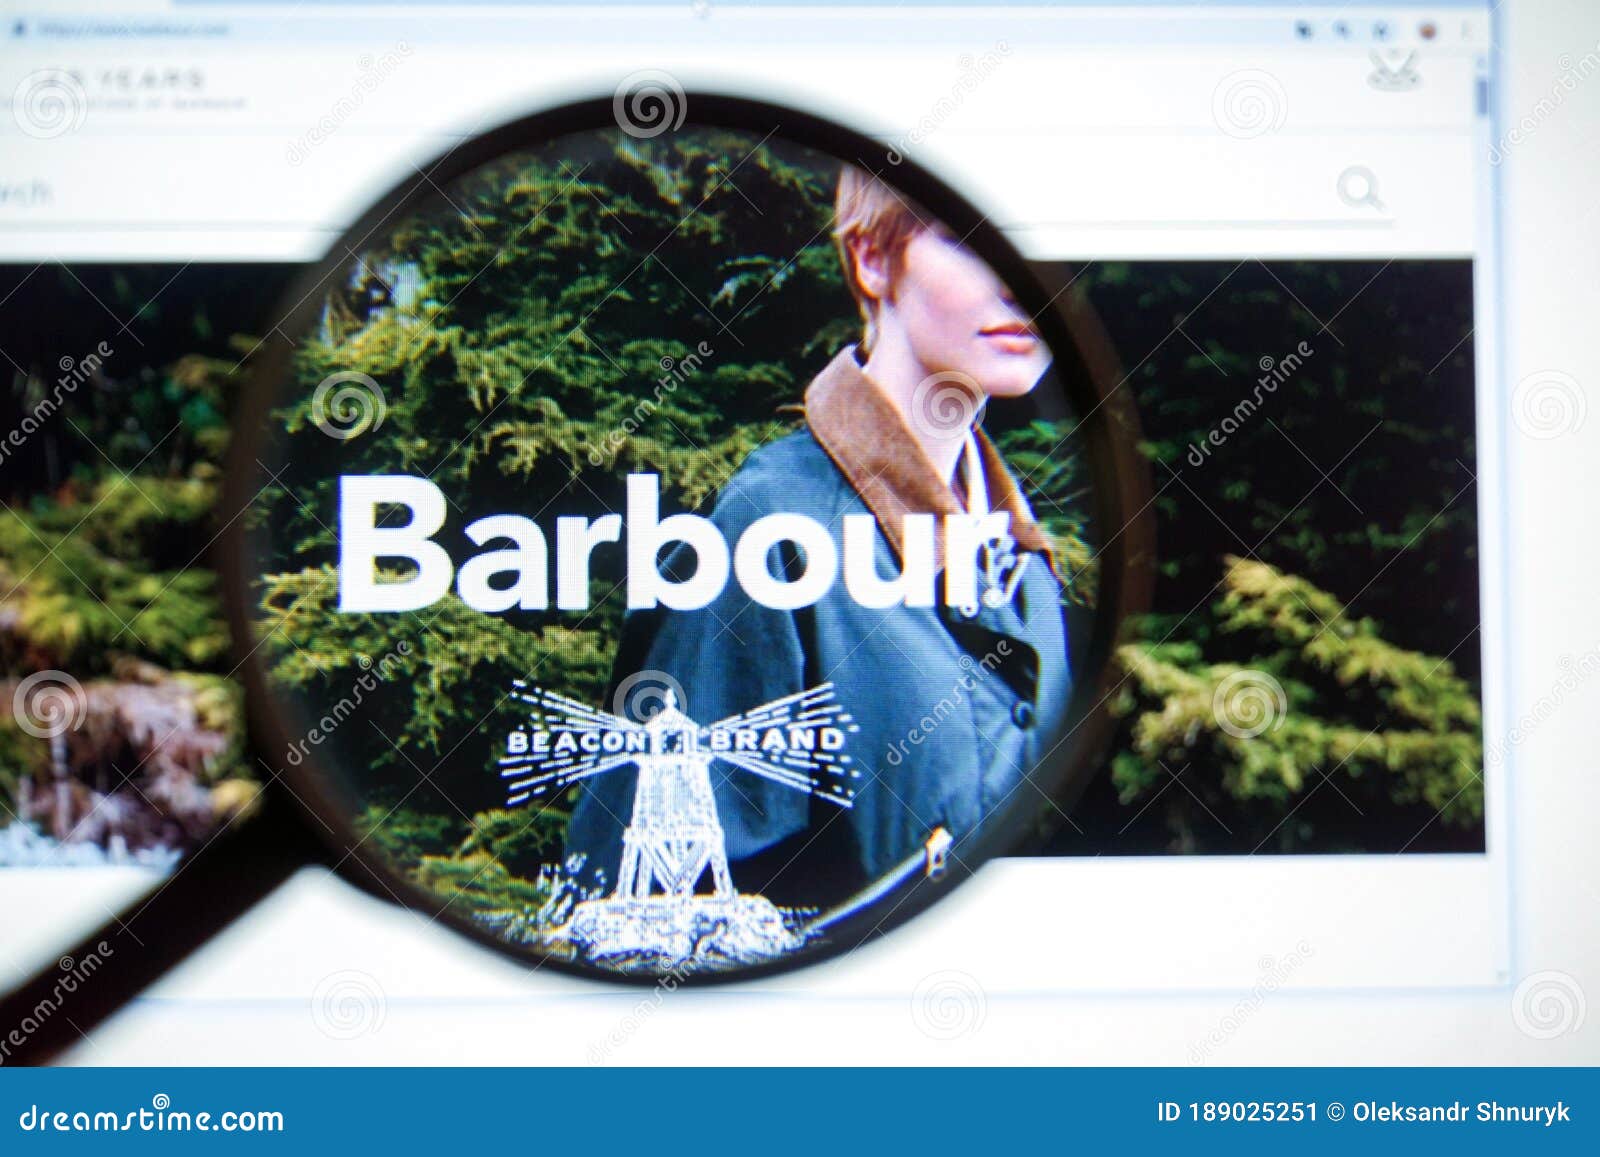 barbour website